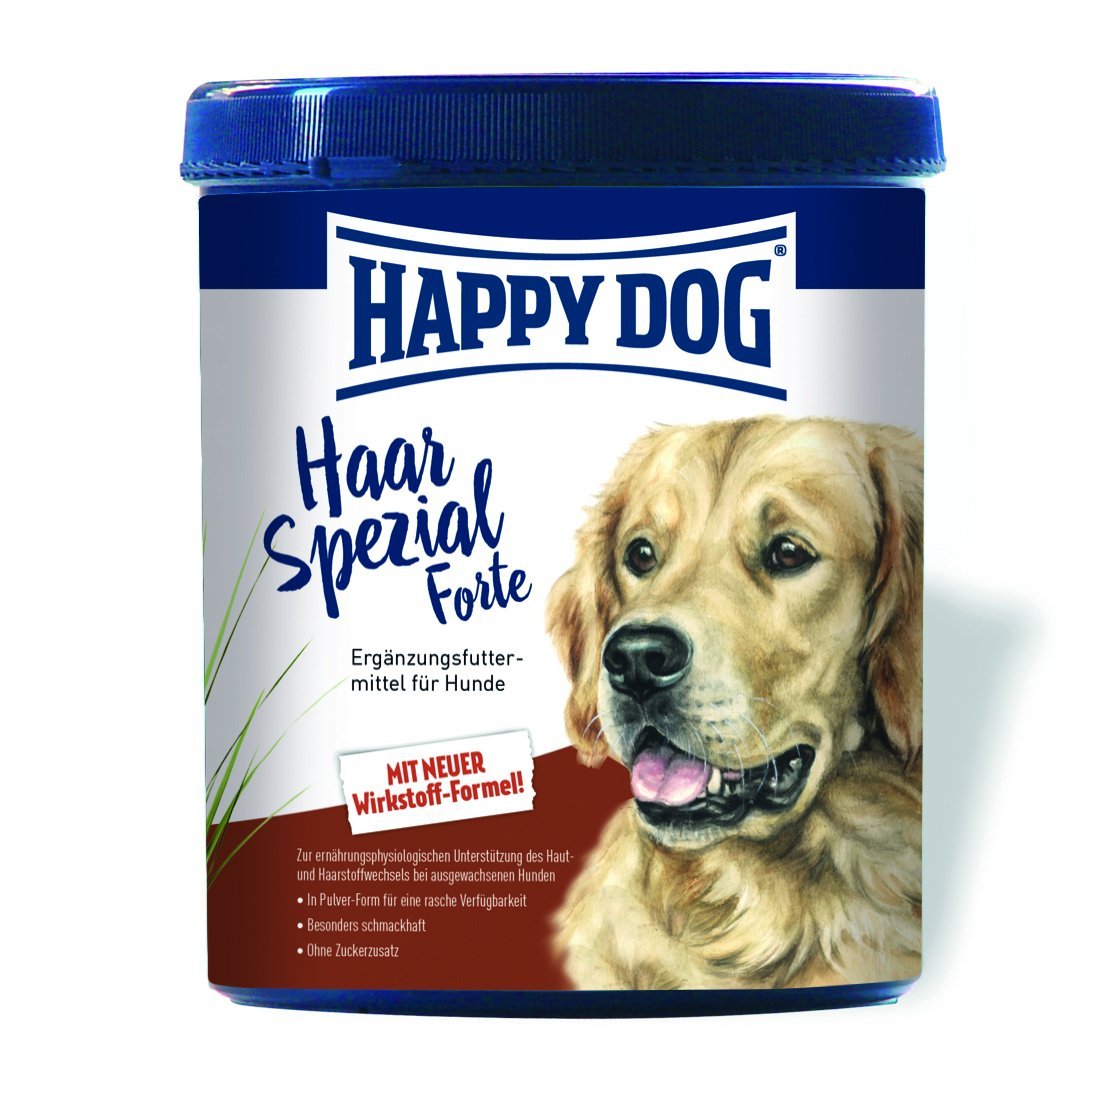 happy dog spezial forte haar spezial 200g